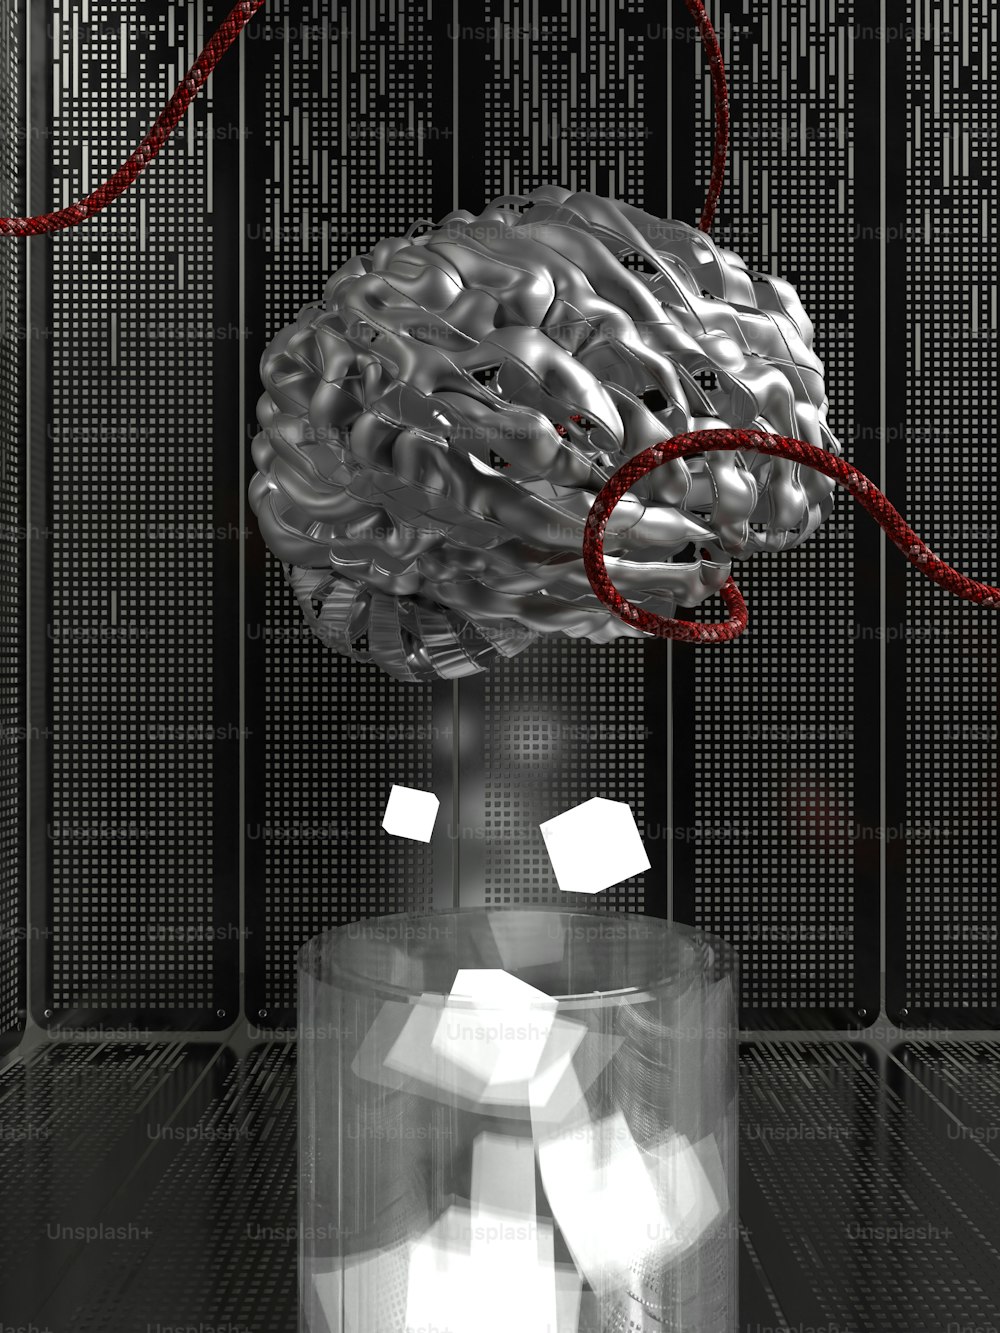 um cérebro em um recipiente de vidro com um cordão vermelho